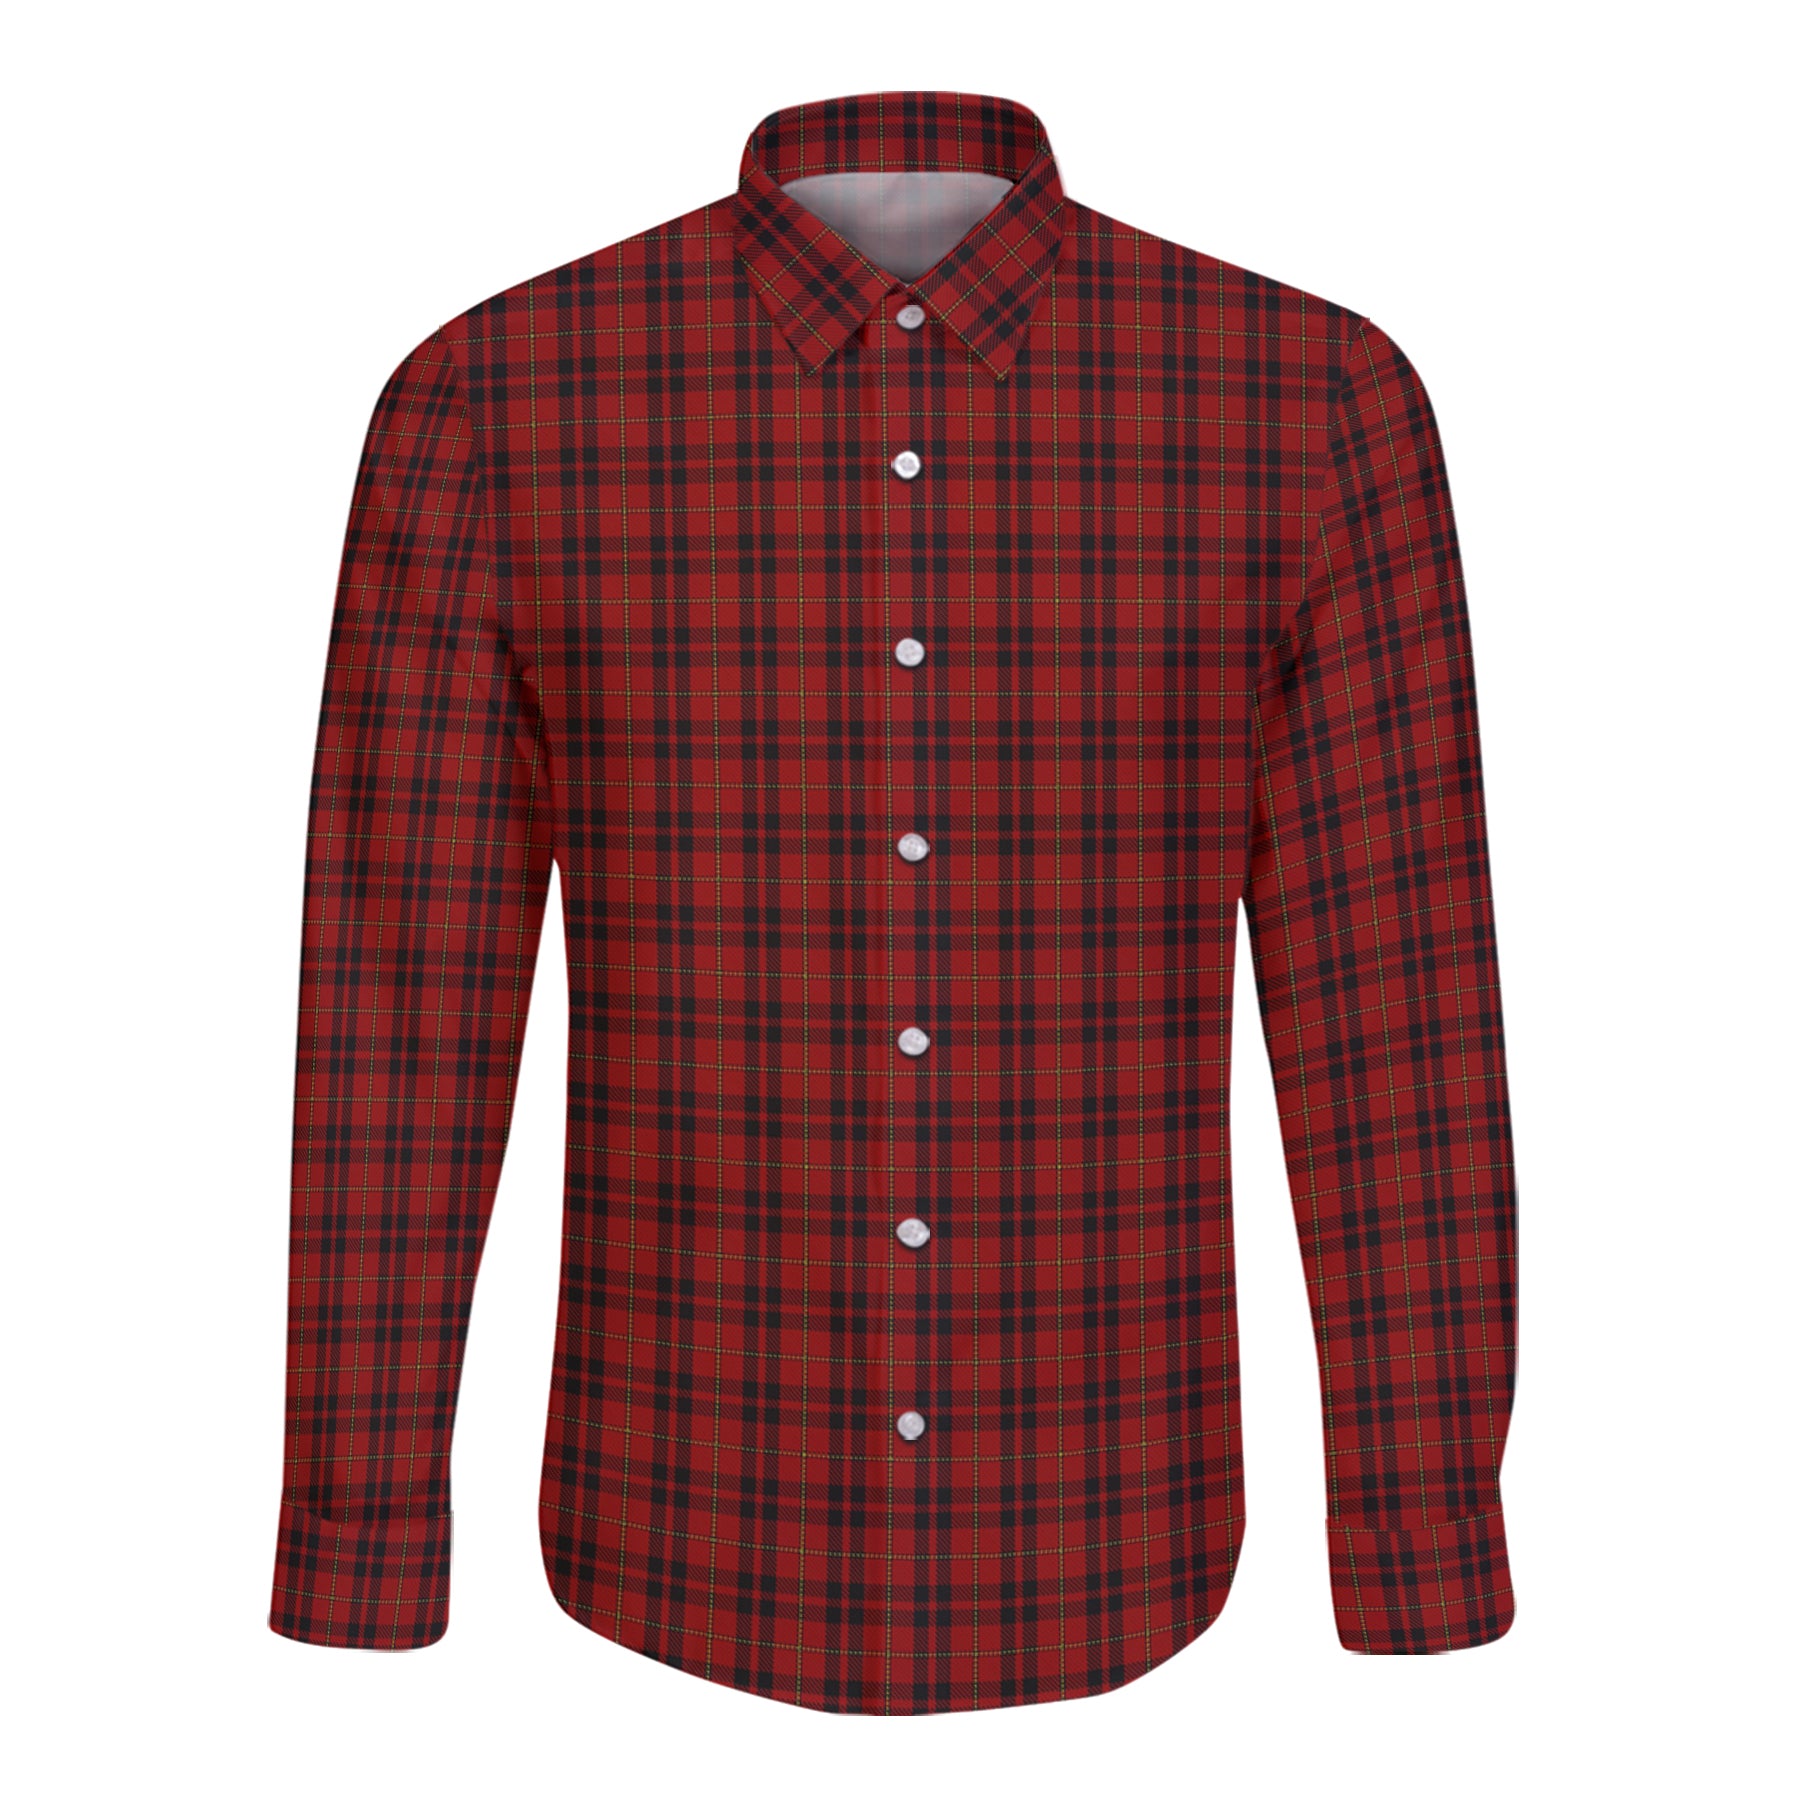 Mackeane Tartan Long Sleeve Button Up Shirt K23